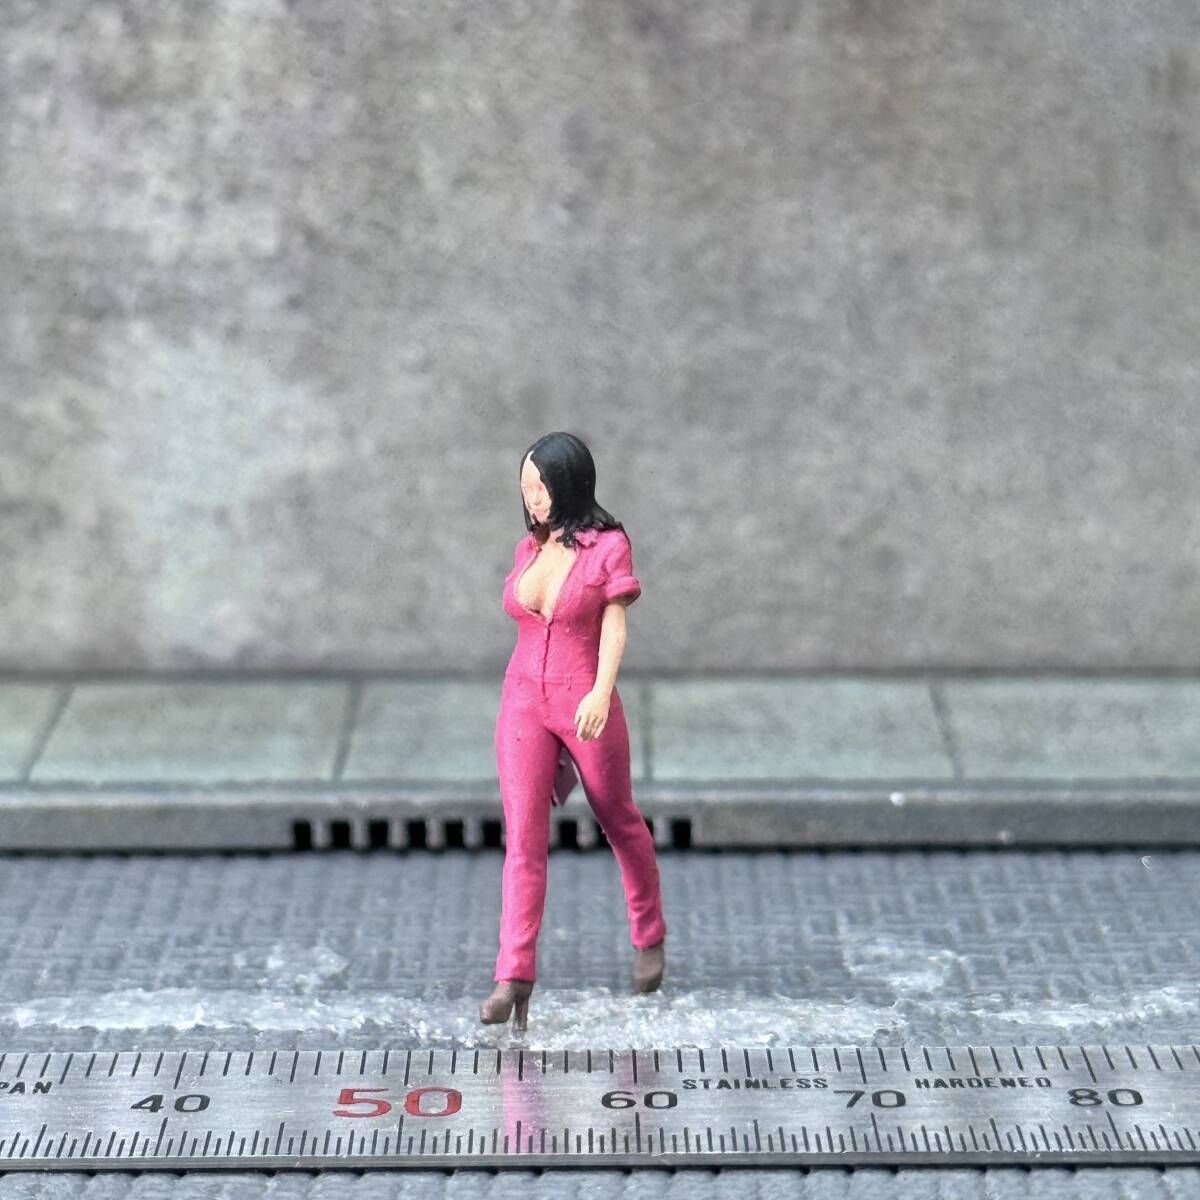 【CJ-458】1/64 スケール ピンクのつなぎを着た女性 フィギュア ミニチュア ジオラマ ミニカー トミカ_画像1